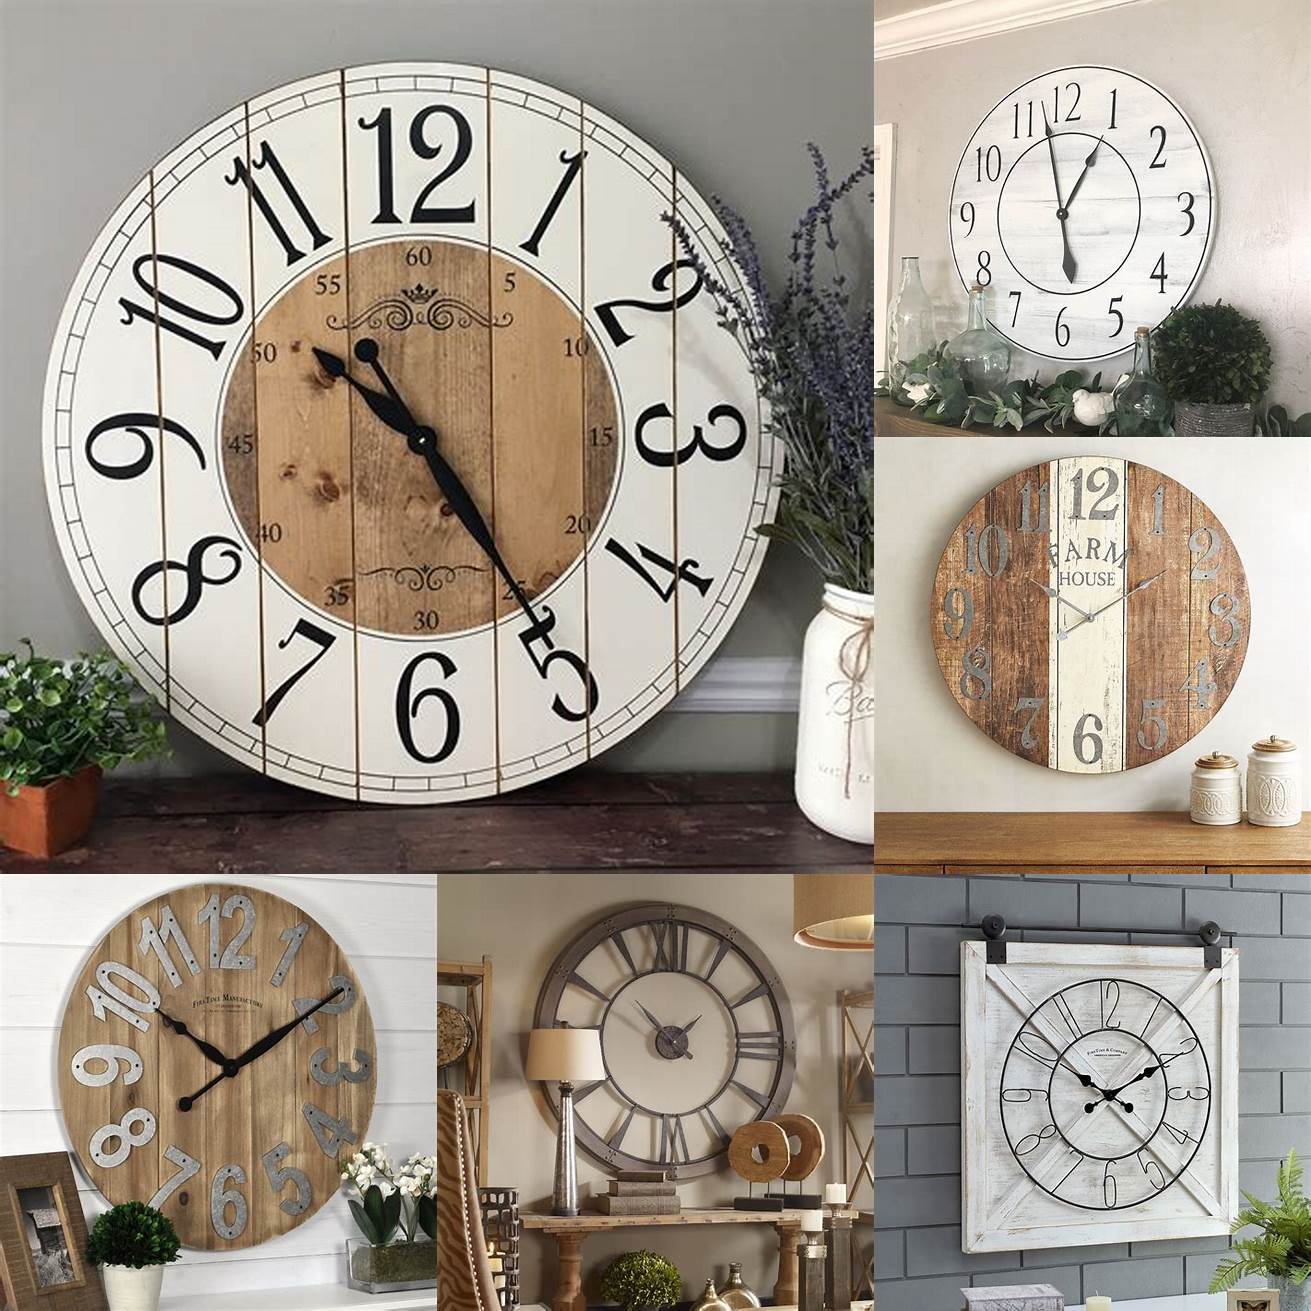 3 Farmhouse-style clock